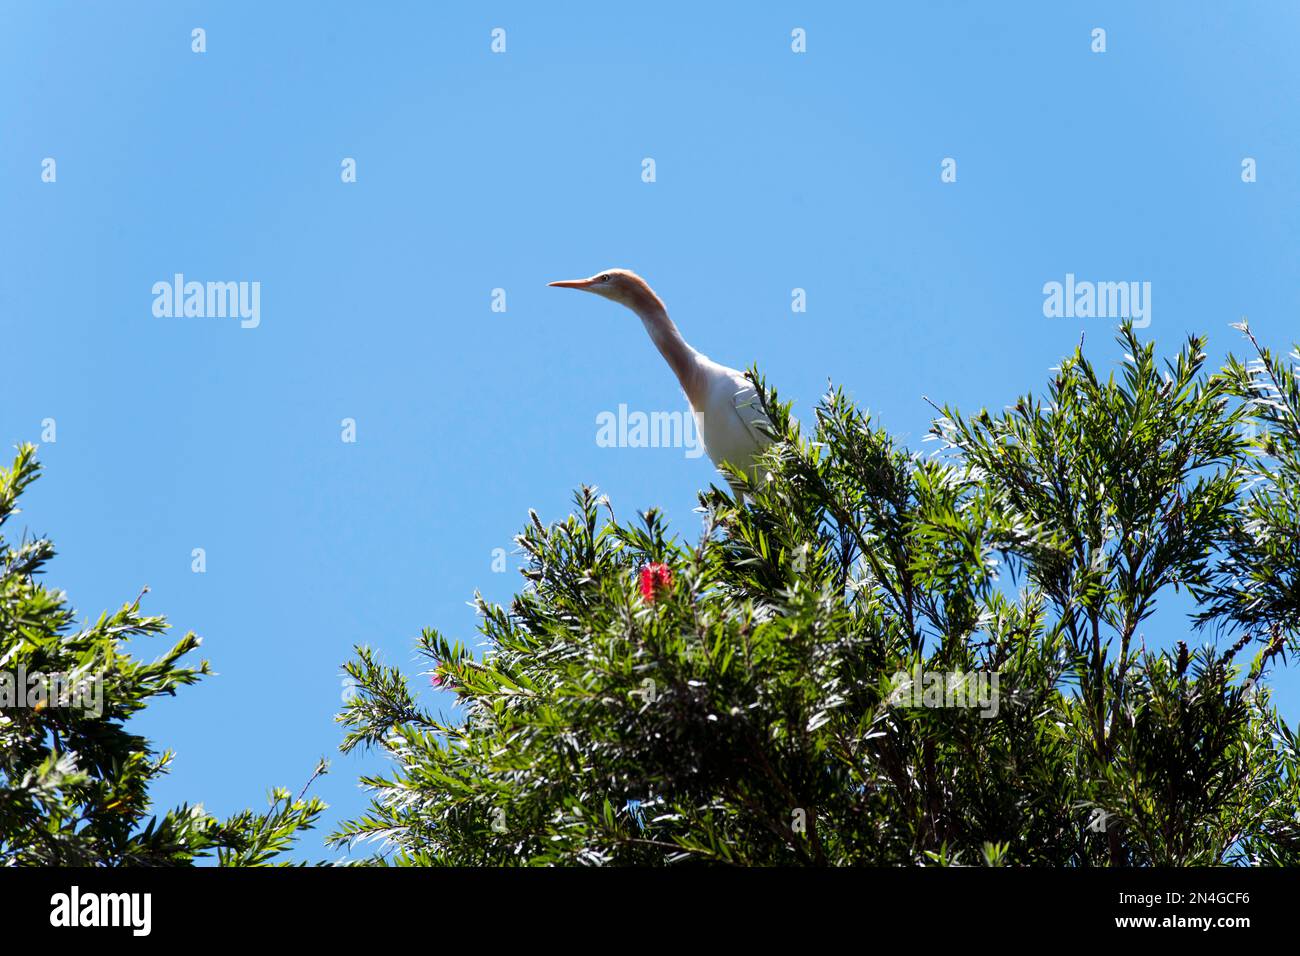 Egret de bétail (Bubulcus ibis) perçant sur la branche d'un arbre à Sydney, Nouvelle-Galles du Sud, Australie (photo de Tara Chand Malhotra) Banque D'Images